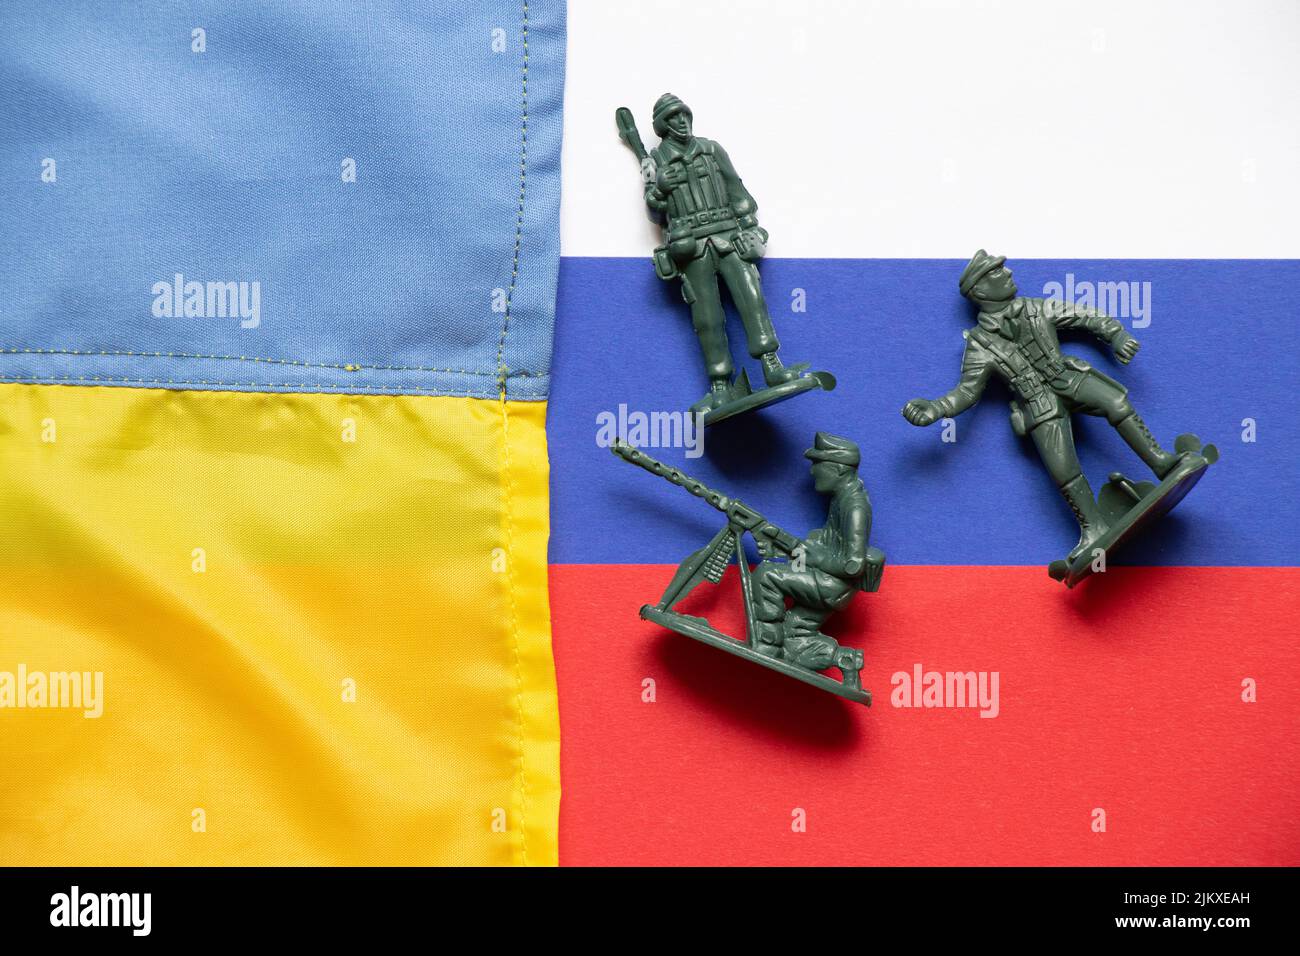 La bandiera dell'Ucraina e della Russia e le bandiere russe sono soldati di plastica sparsi per i bambini, la guerra ucraino-russa Foto Stock